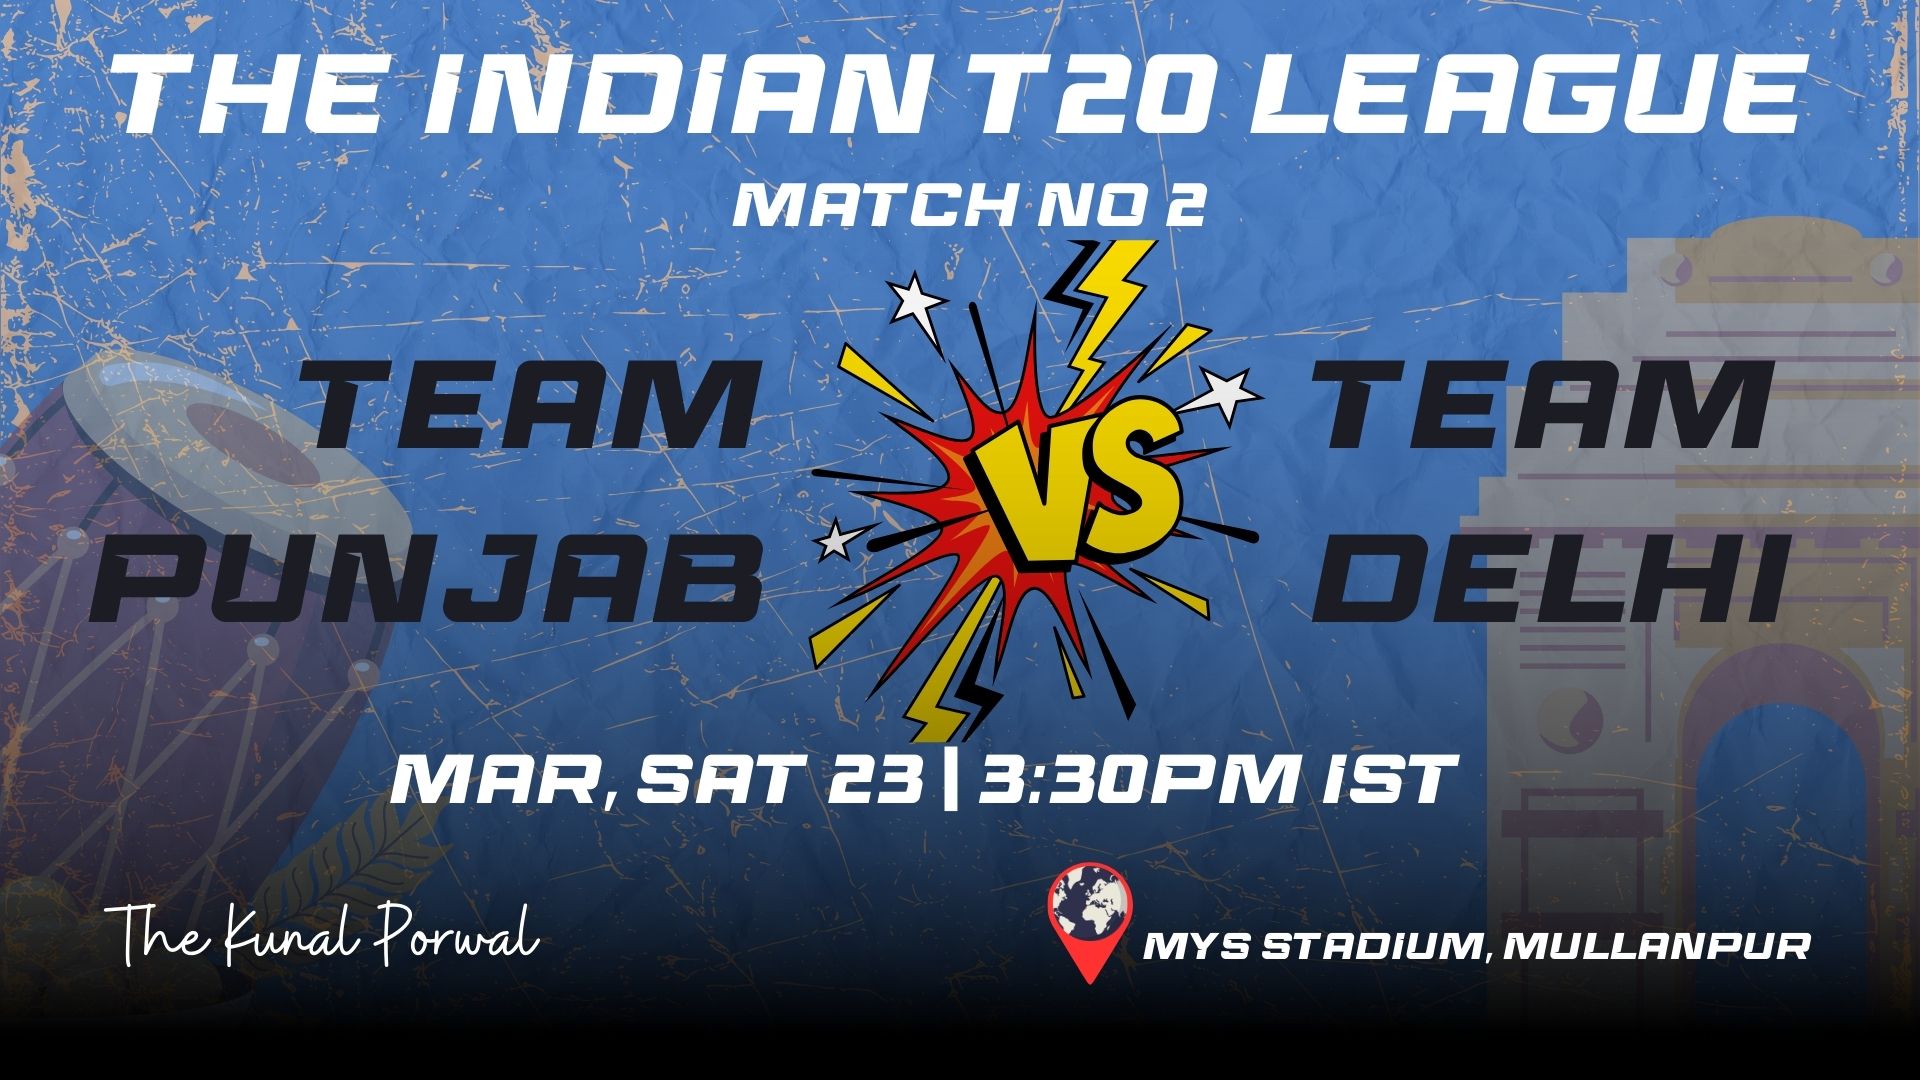 Match 2: Punjab Kings vs Delhi Capitals | Fantasy Preview